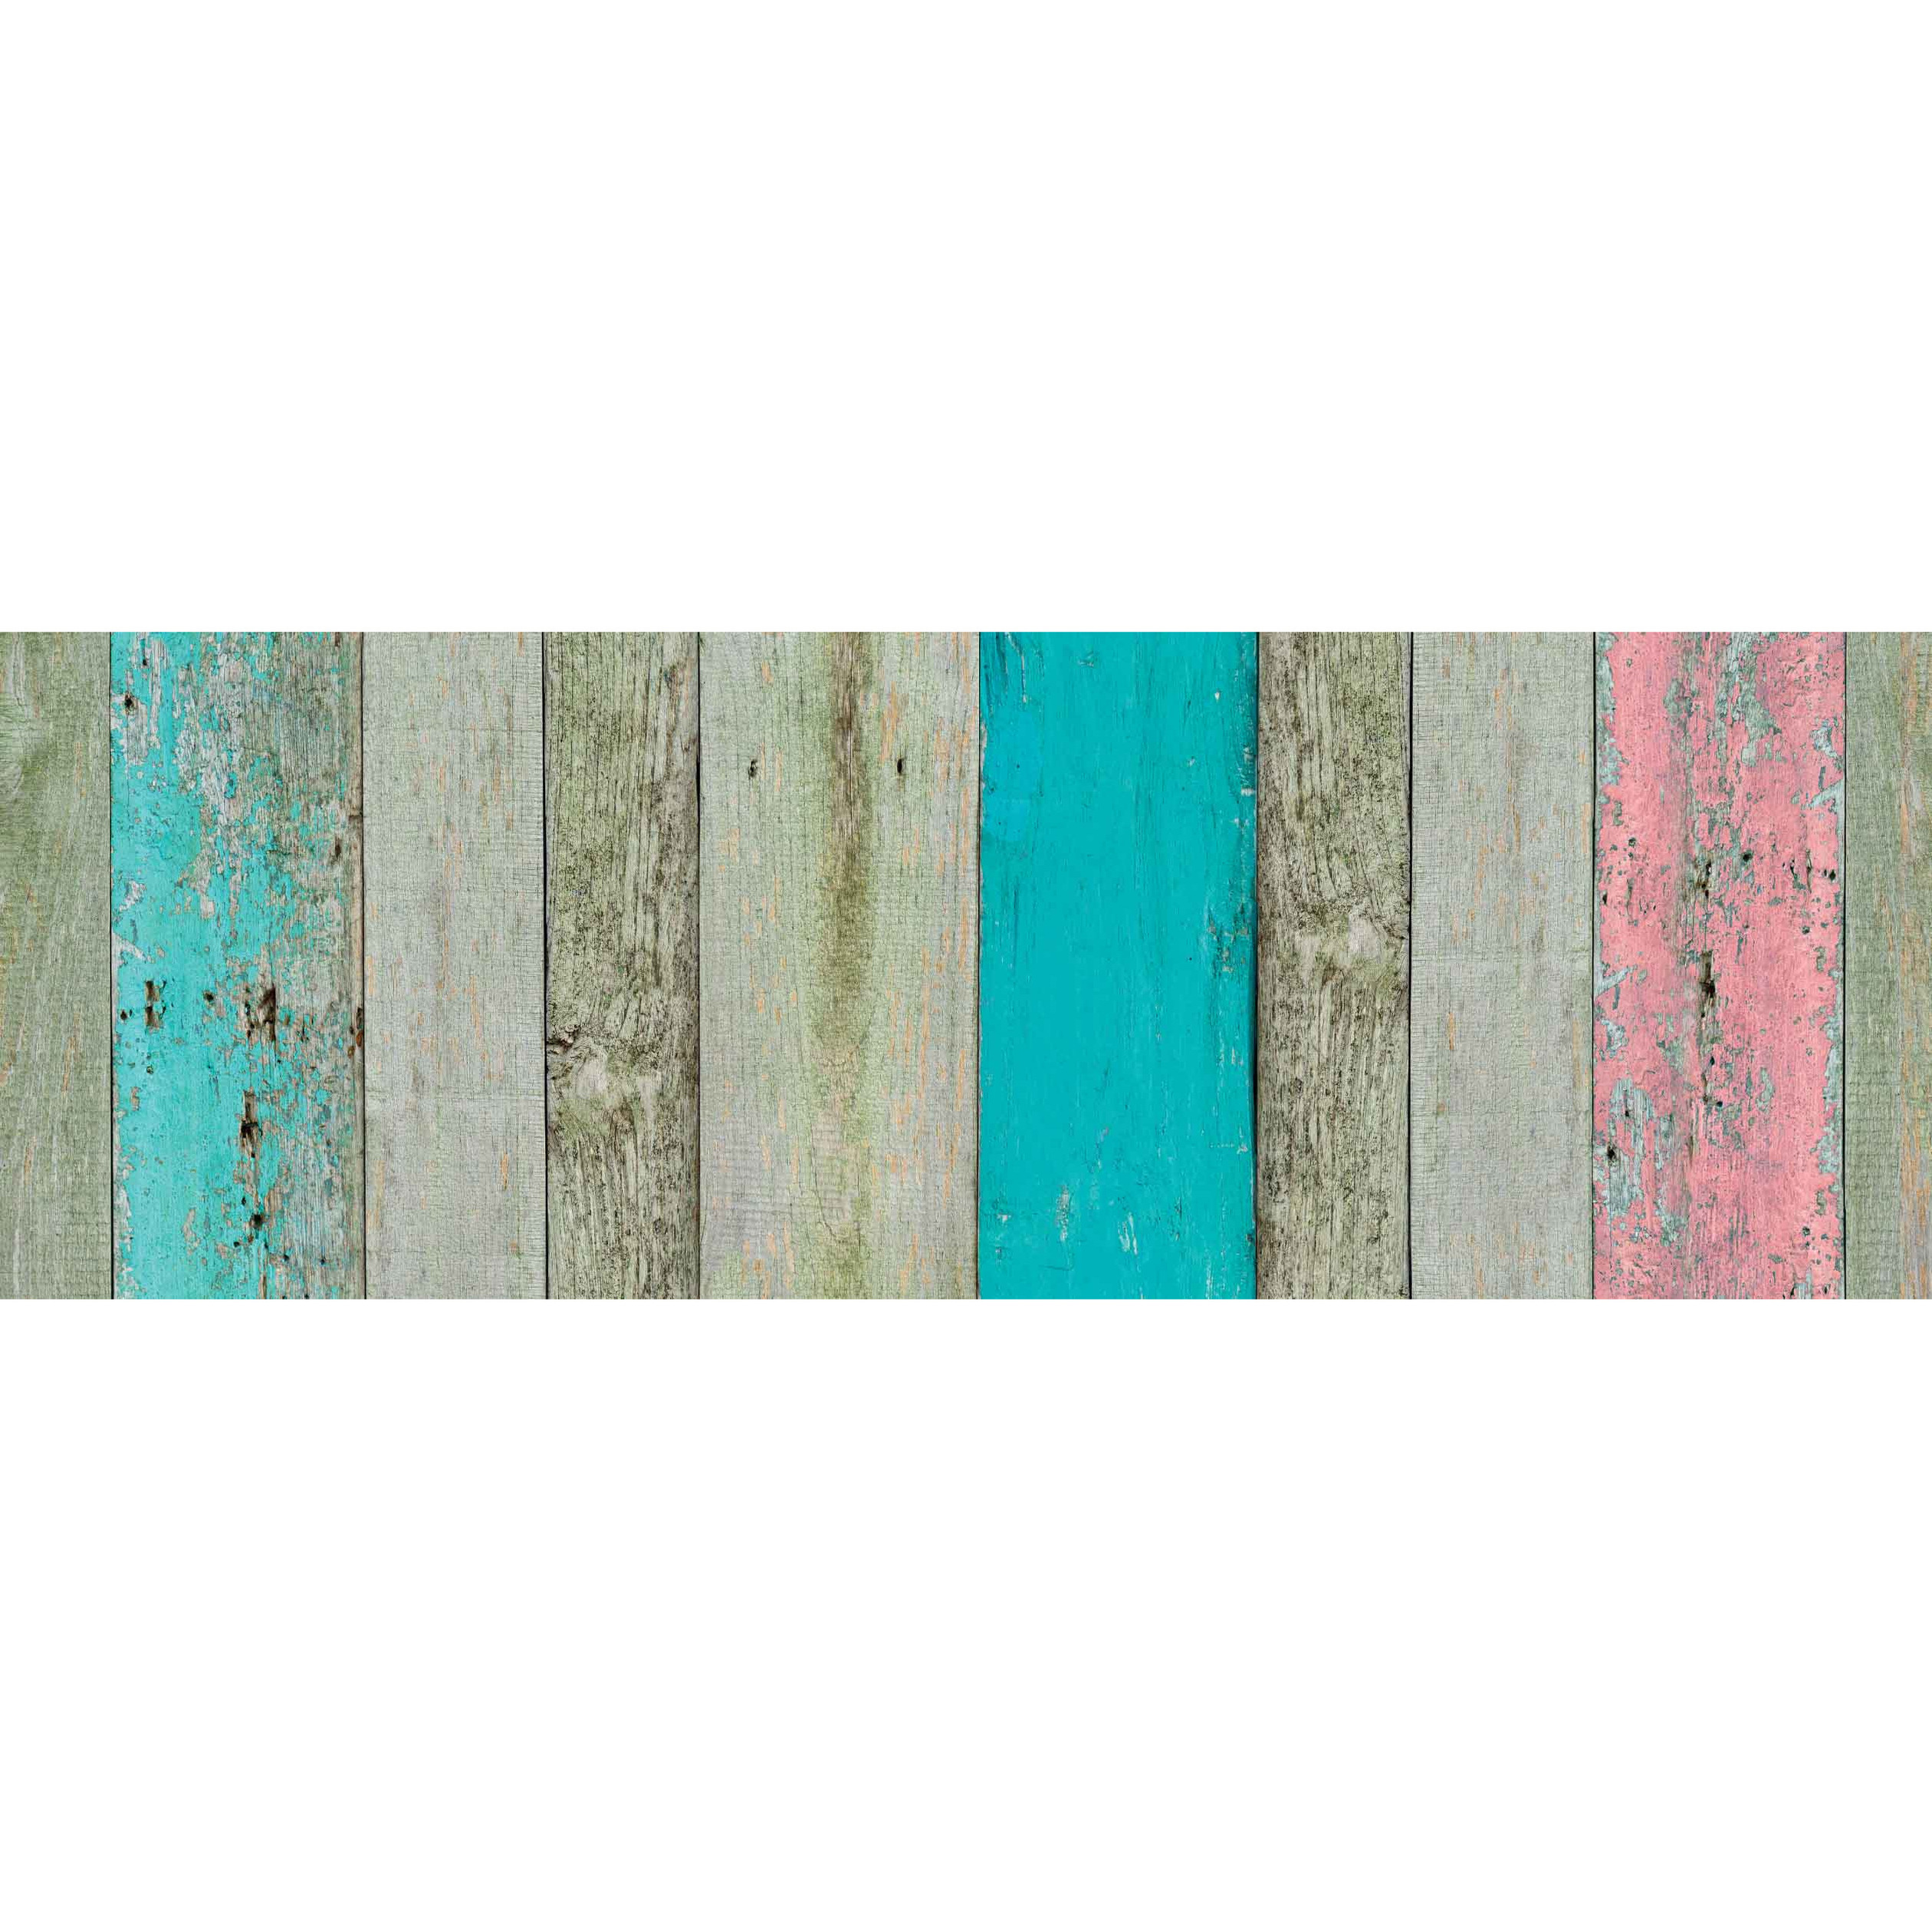 3x Stuks decoratie plakfolie houten planken look groen-bruin-roze 45 cm x 2 meter zelfklevend